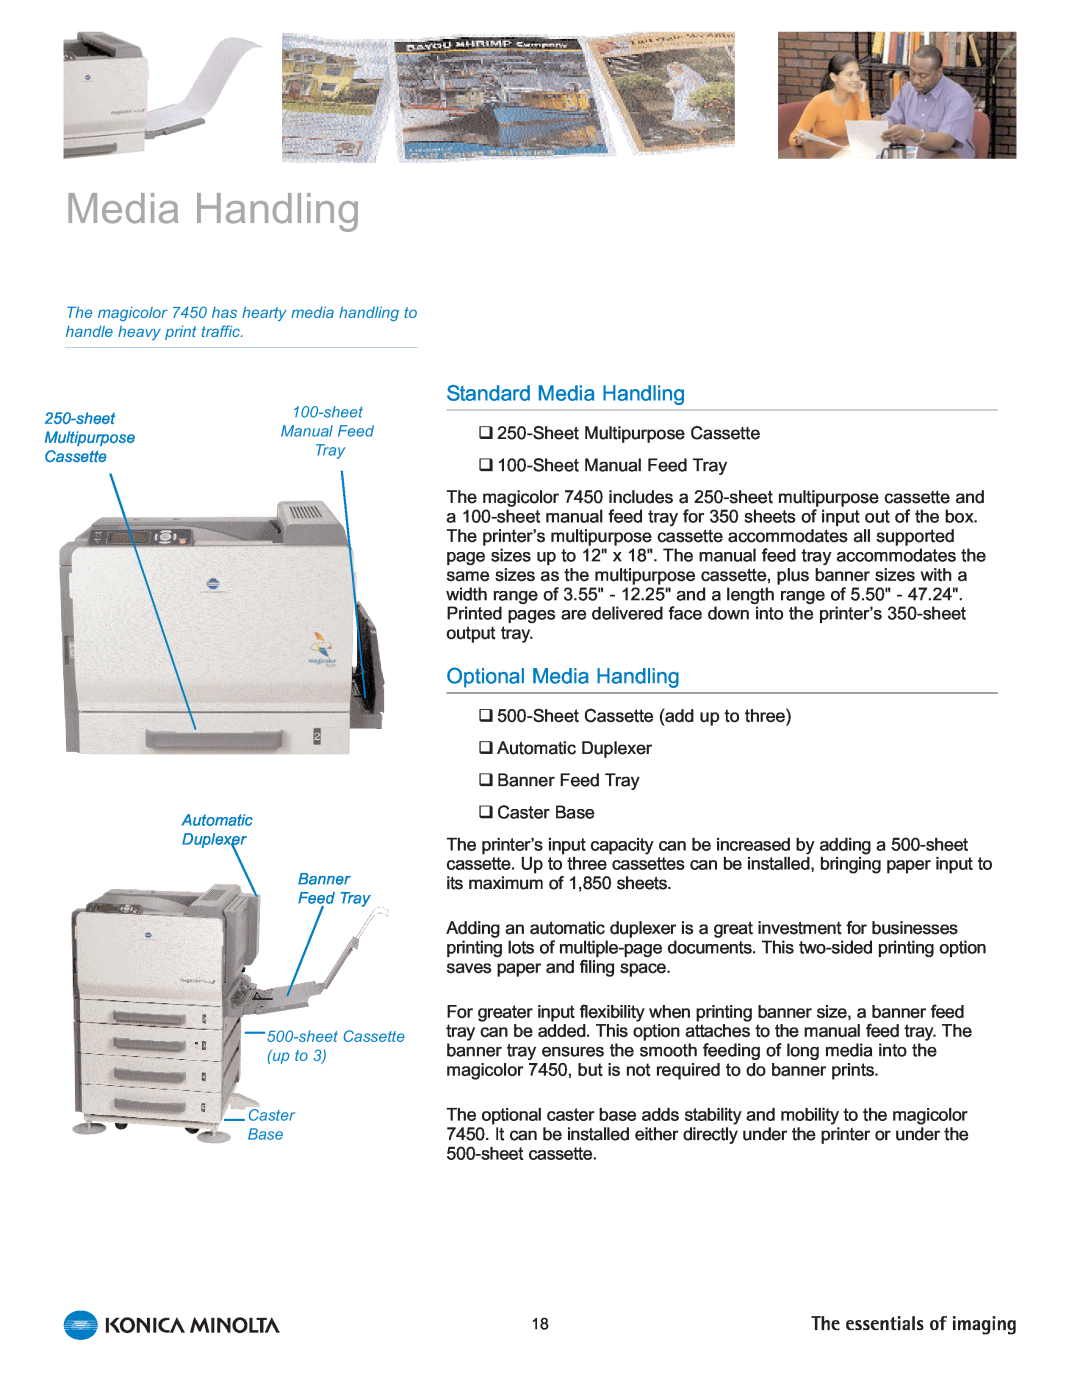 Konica Minolta 7450 manual Standard Media Handling, Optional Media Handling 